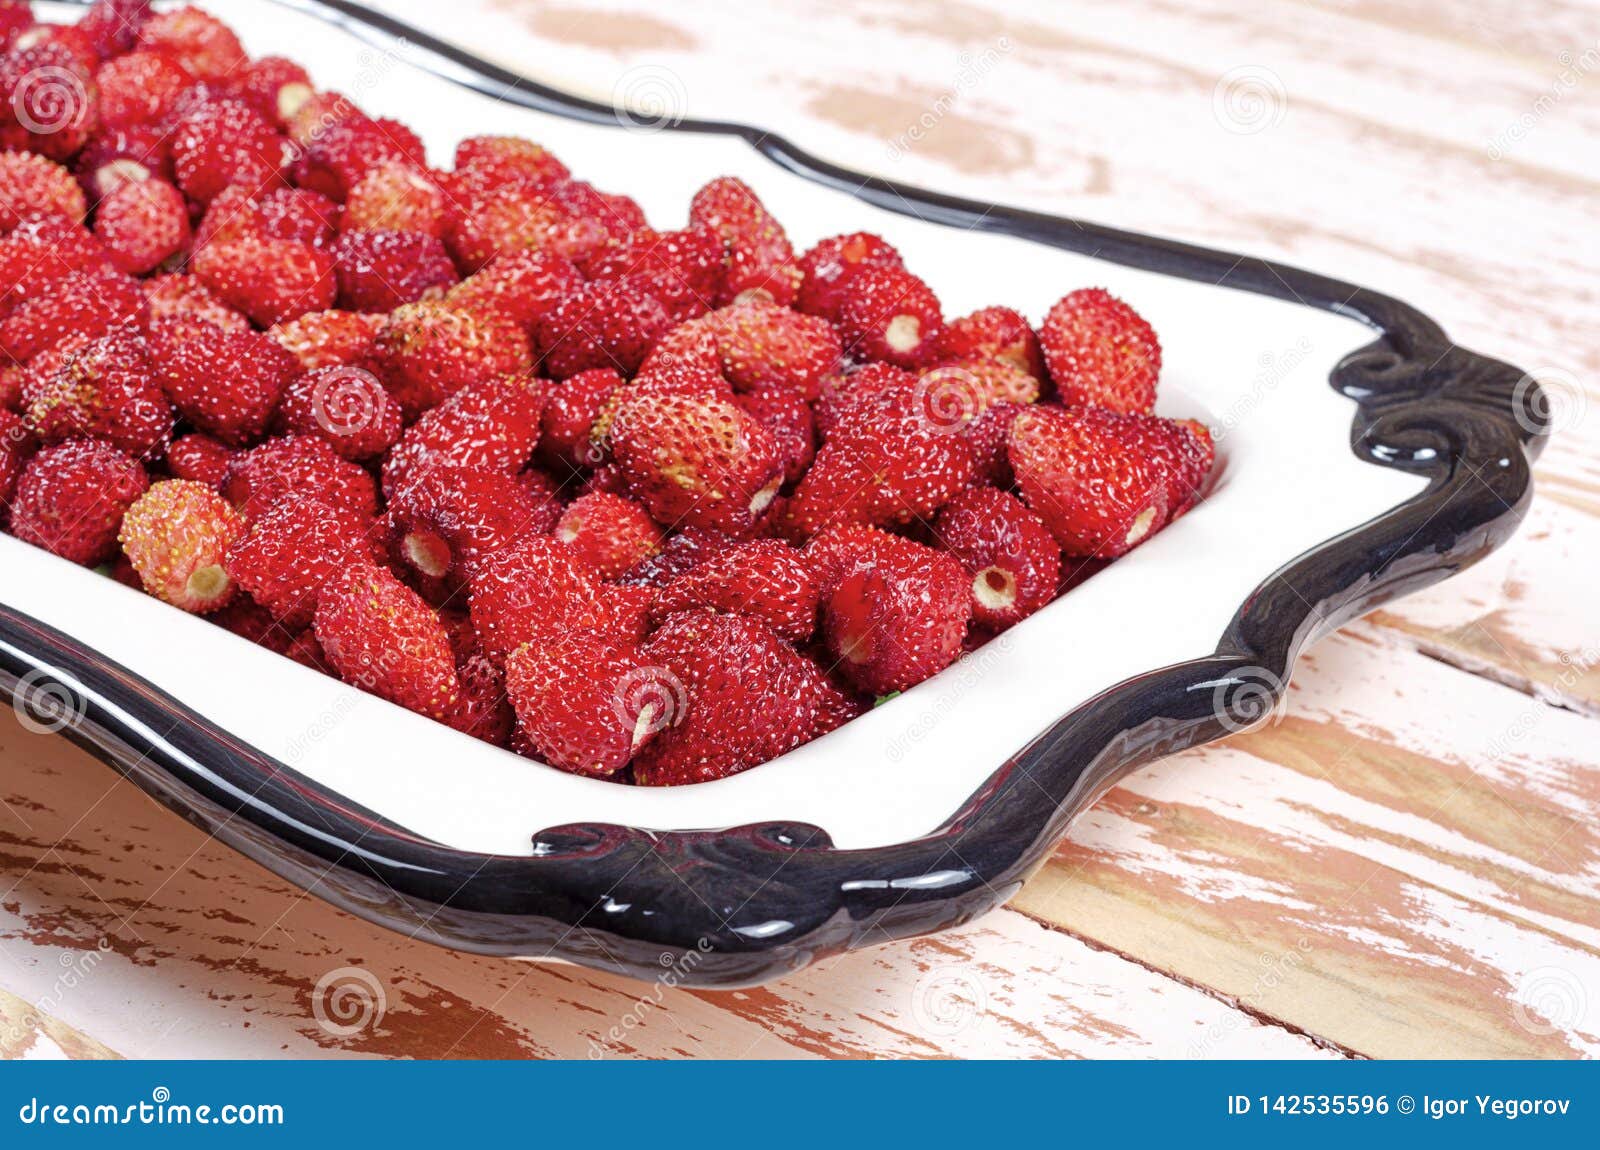 壁纸 : 餐饮, 水果, 草莓, 盘子, 厂, 浆果, 生产, frutti di bosco, 成熟 4361x2907 ...